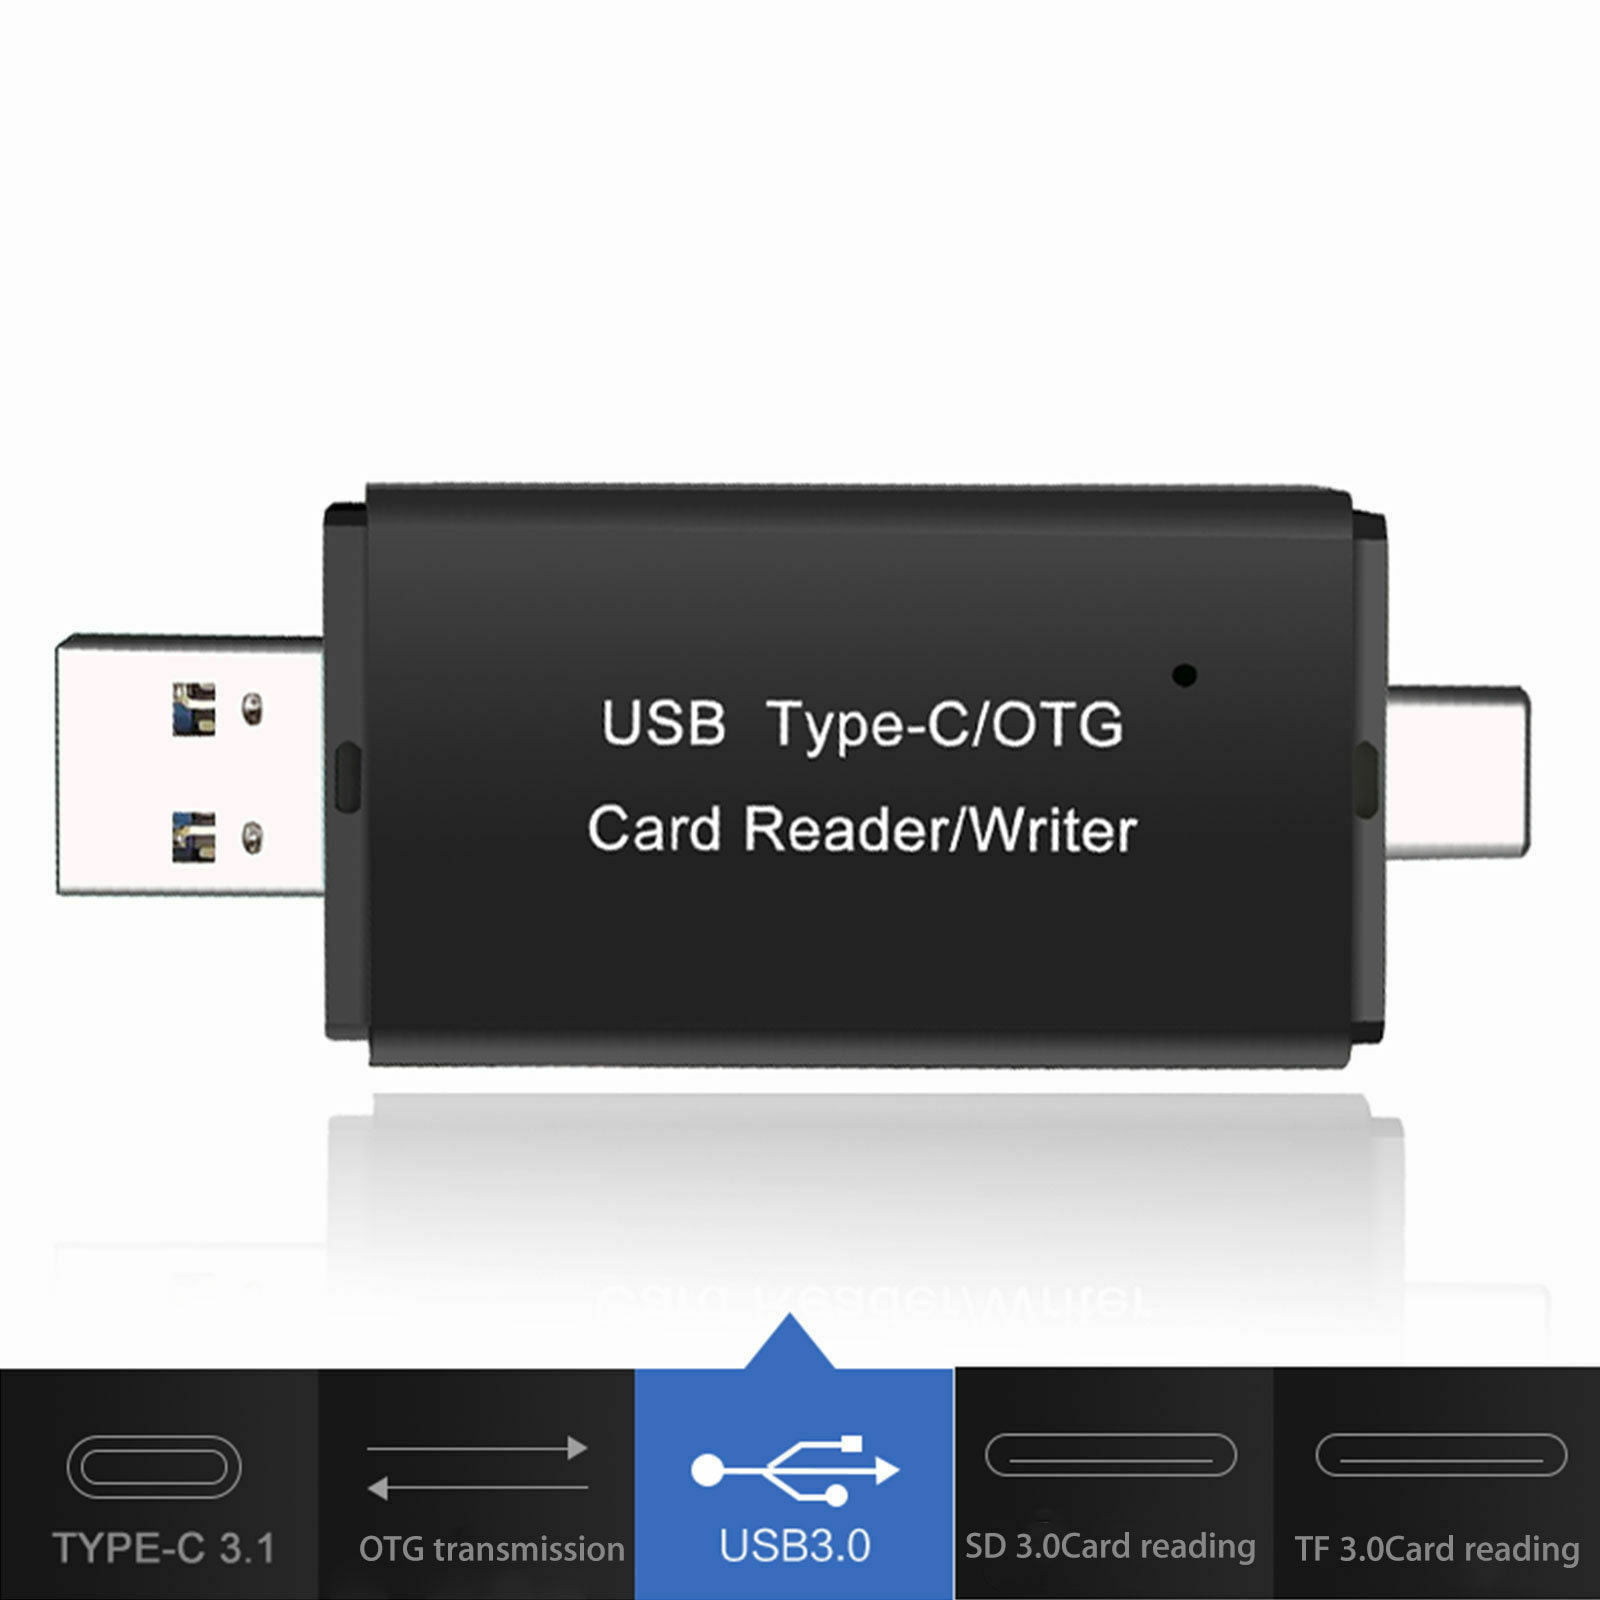 Acheter Lecteur de Carte SD / SDHC / MMC & Clé USB 2.0 moins cher, USB 2.0